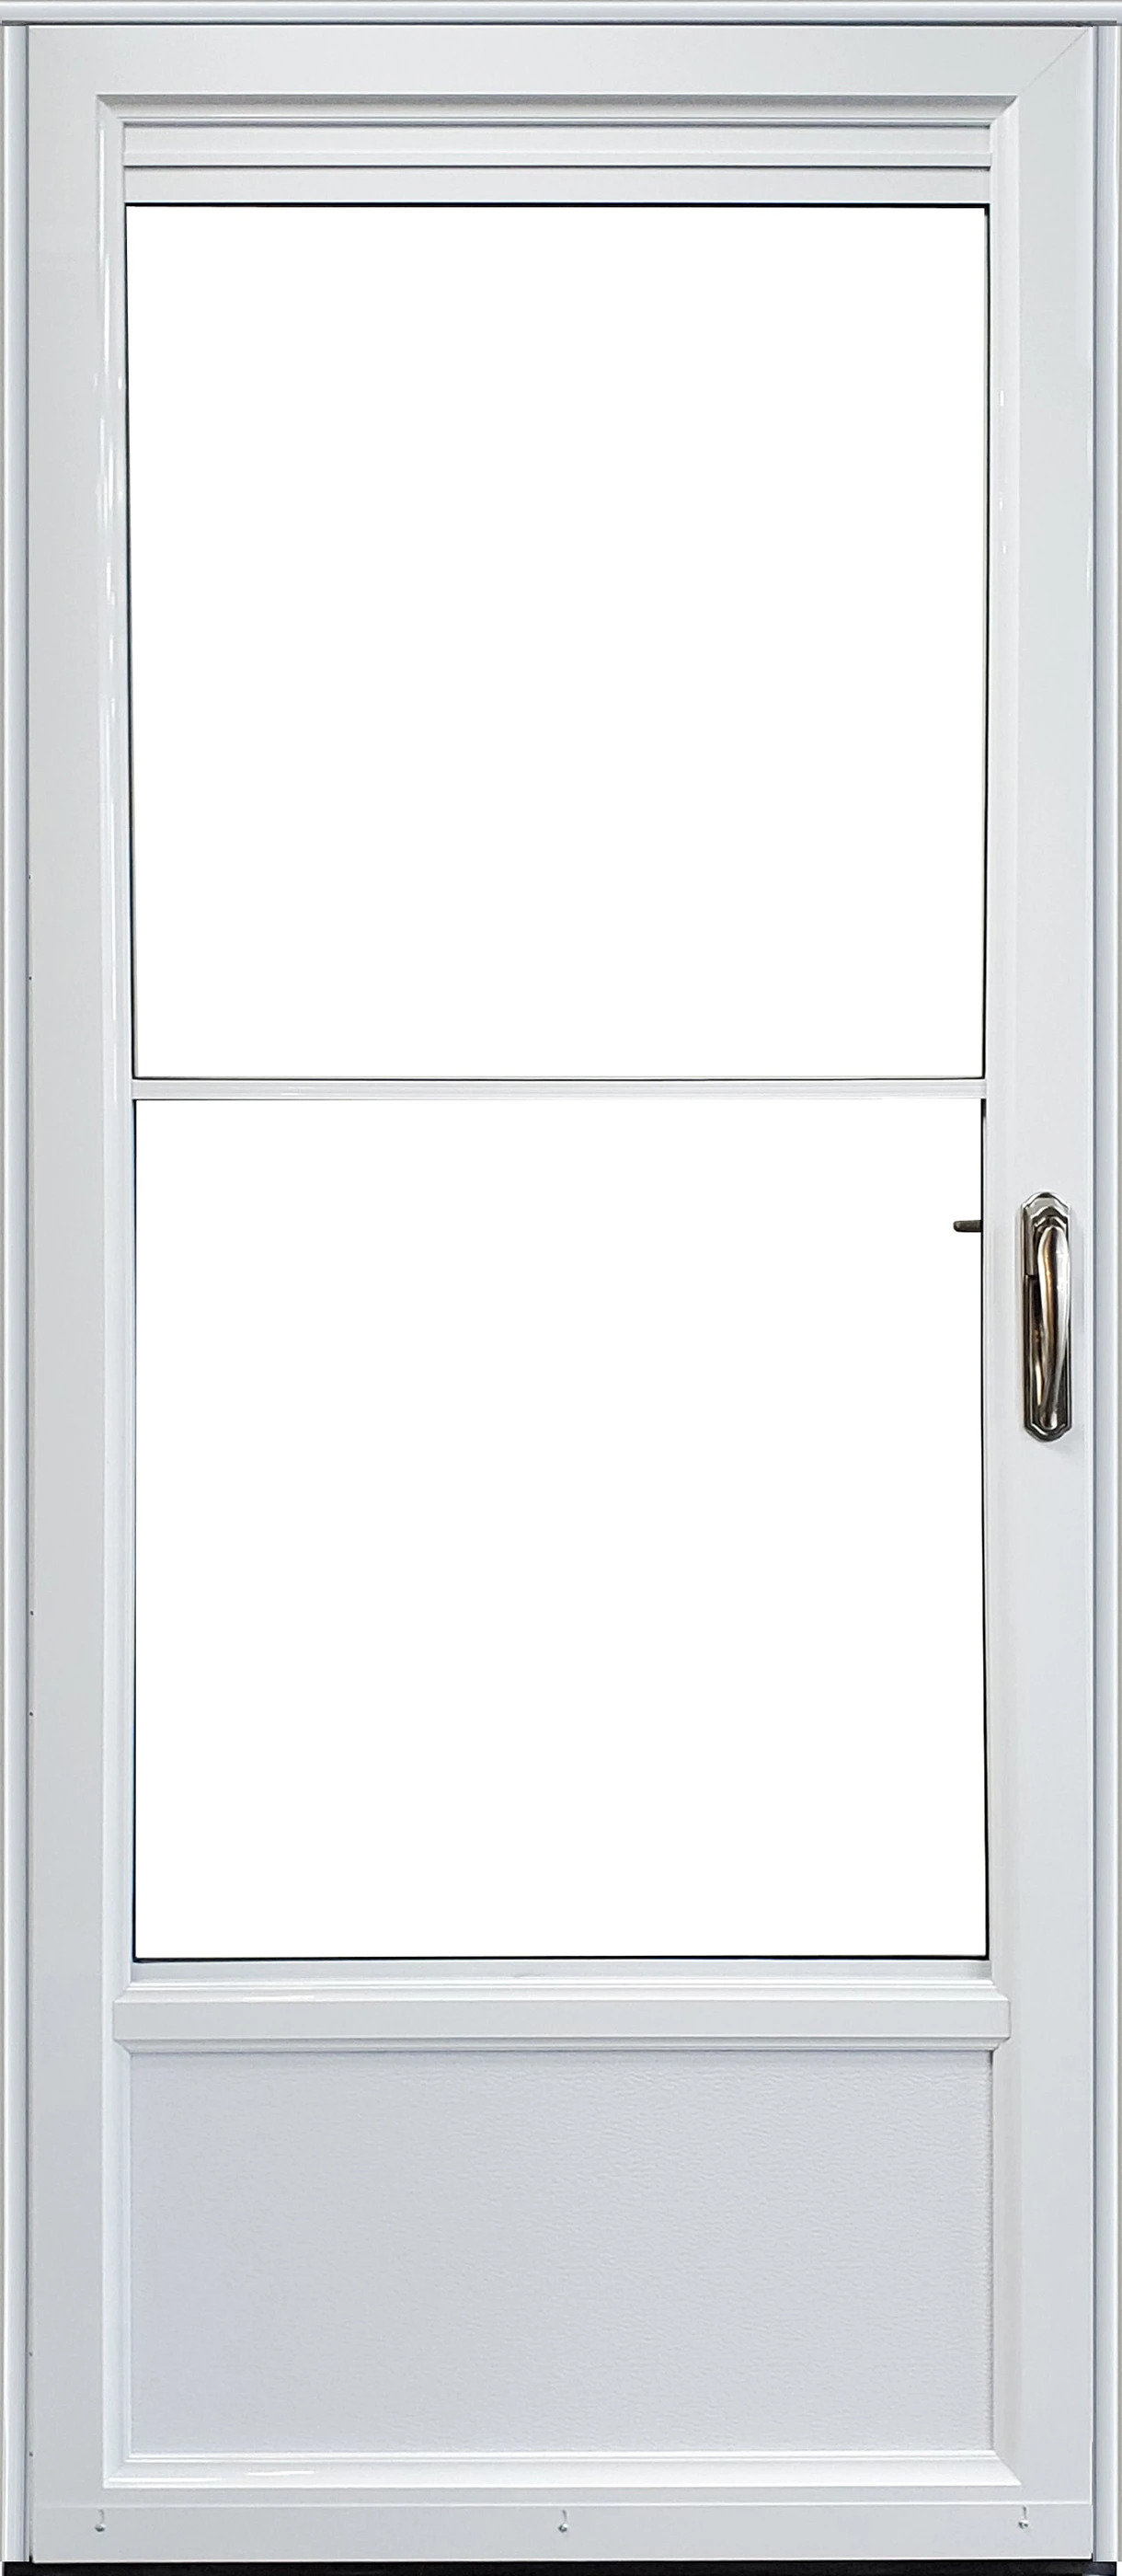 Self-Storing Retractable - Modern Aluminum Storm Door